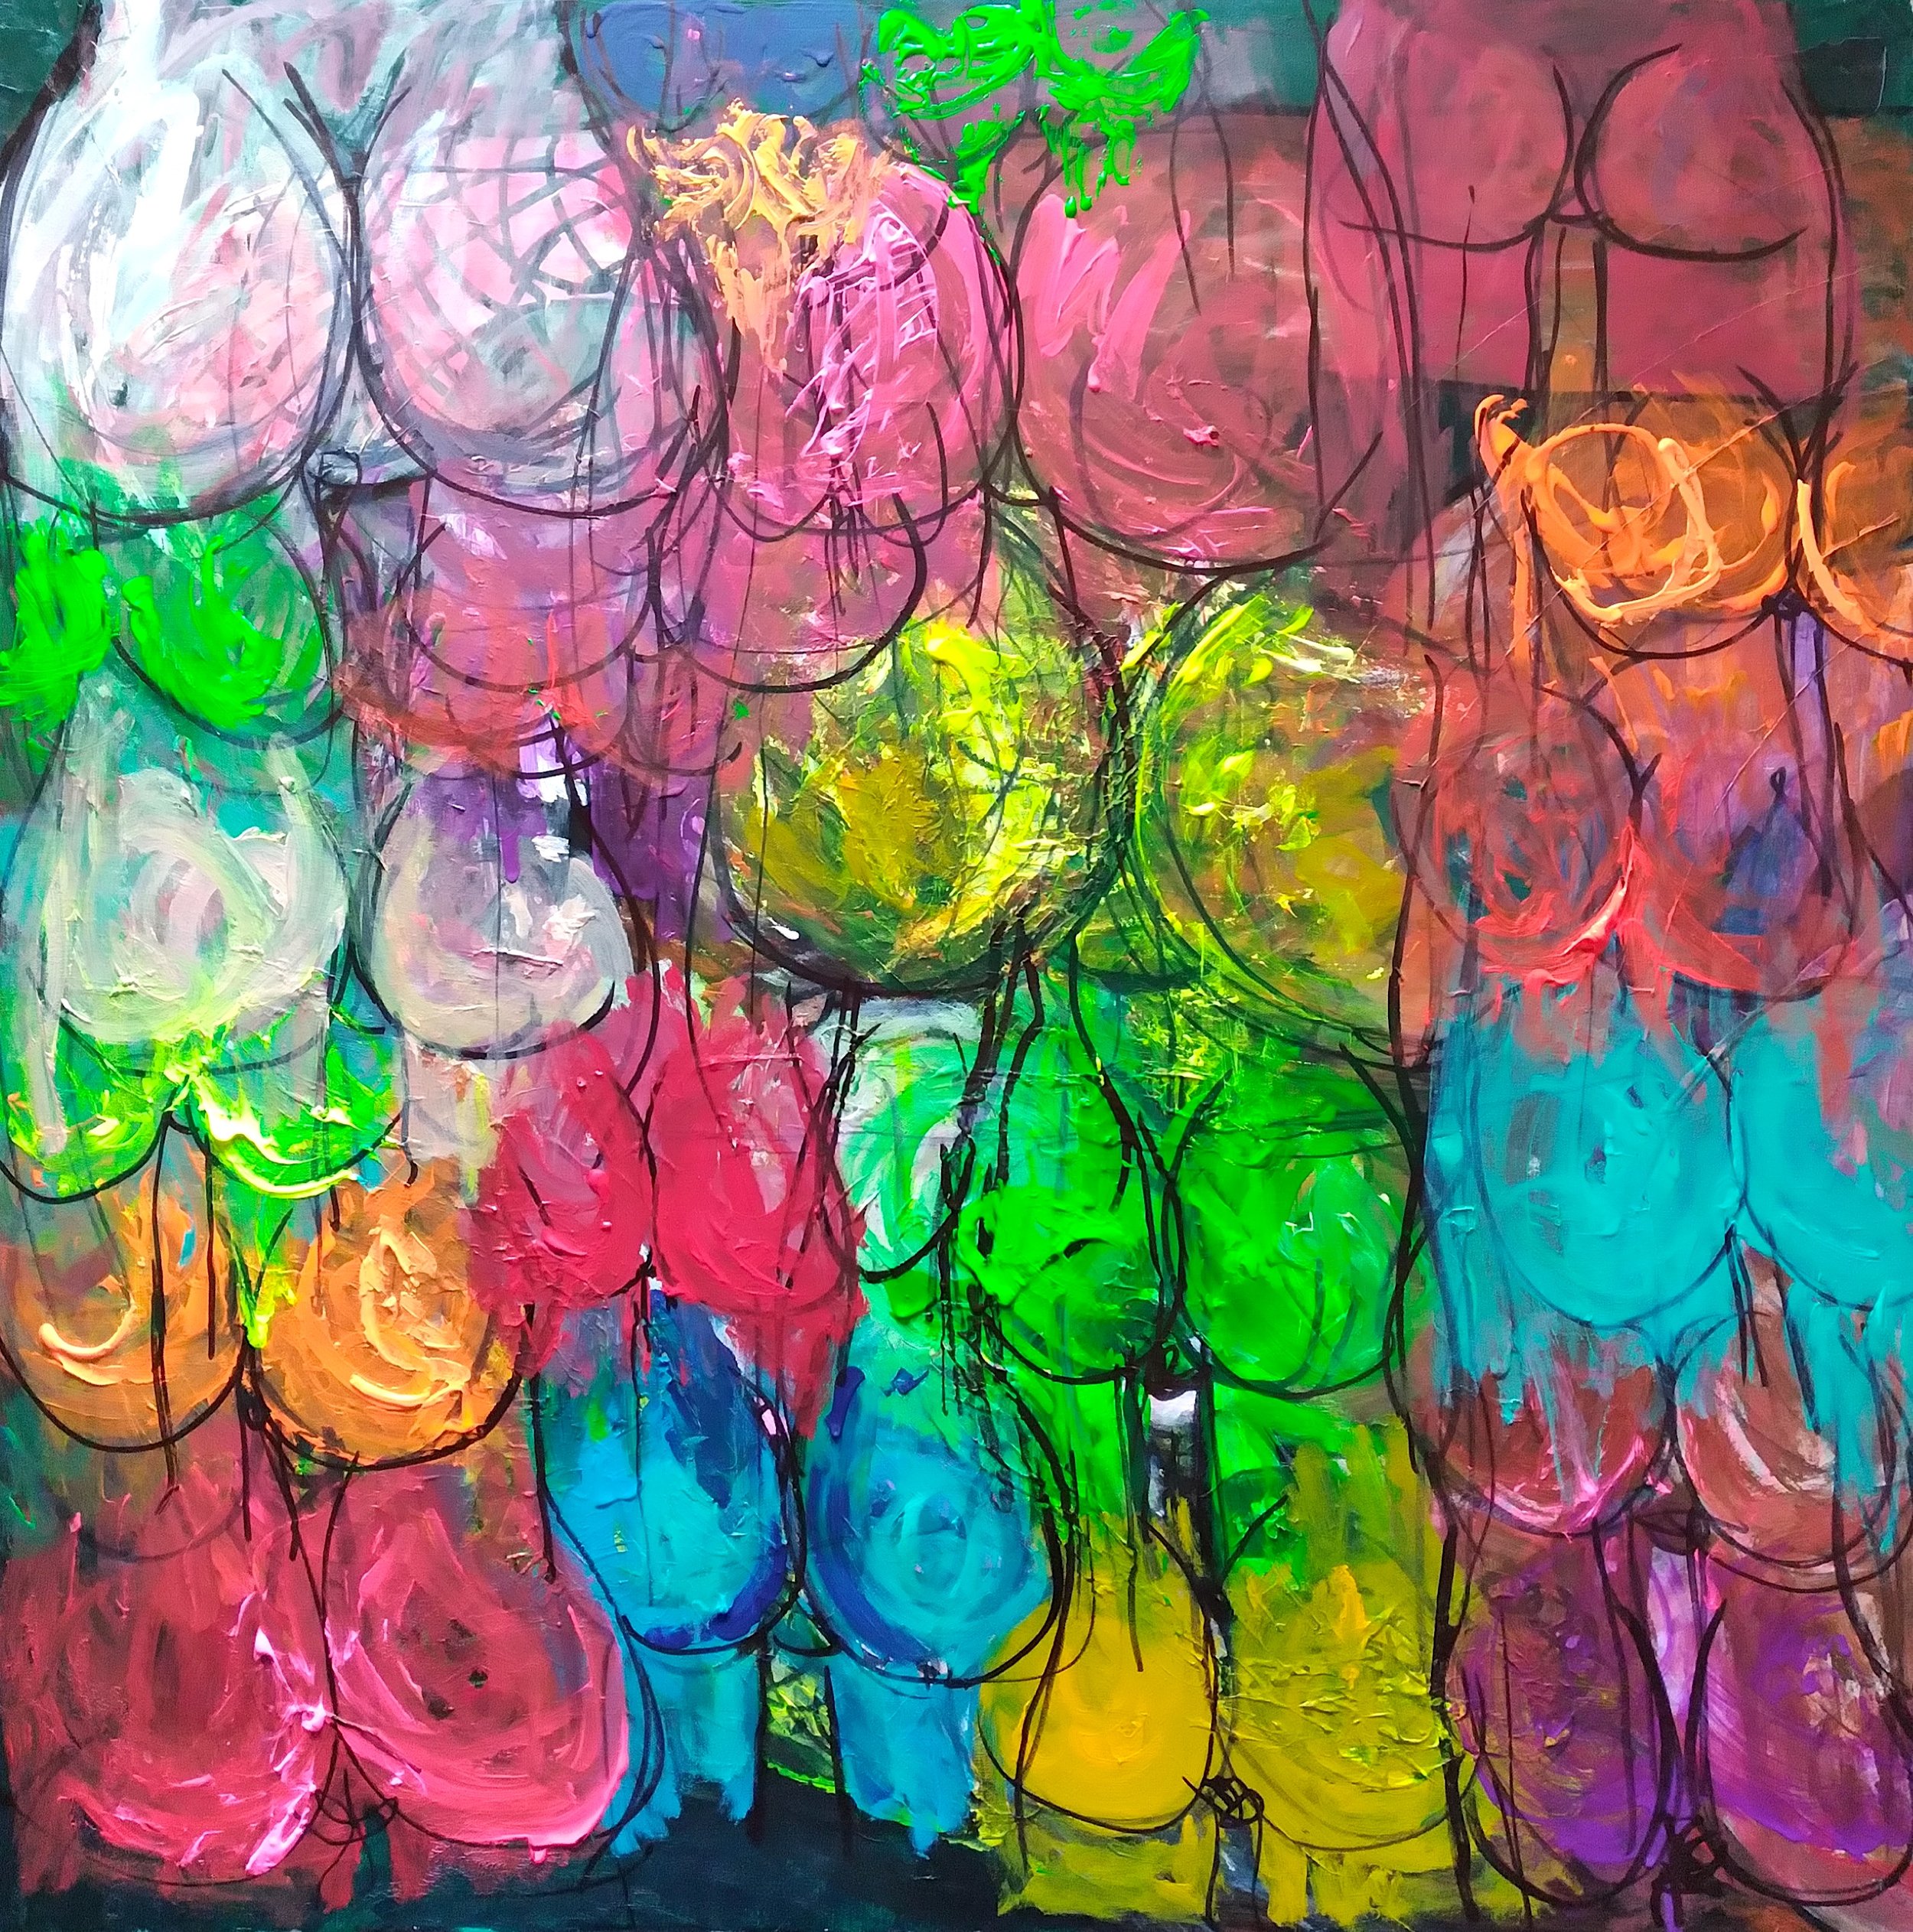 Booty Call, 2014. Oil, acrylic on canvas. 38” x 38”.